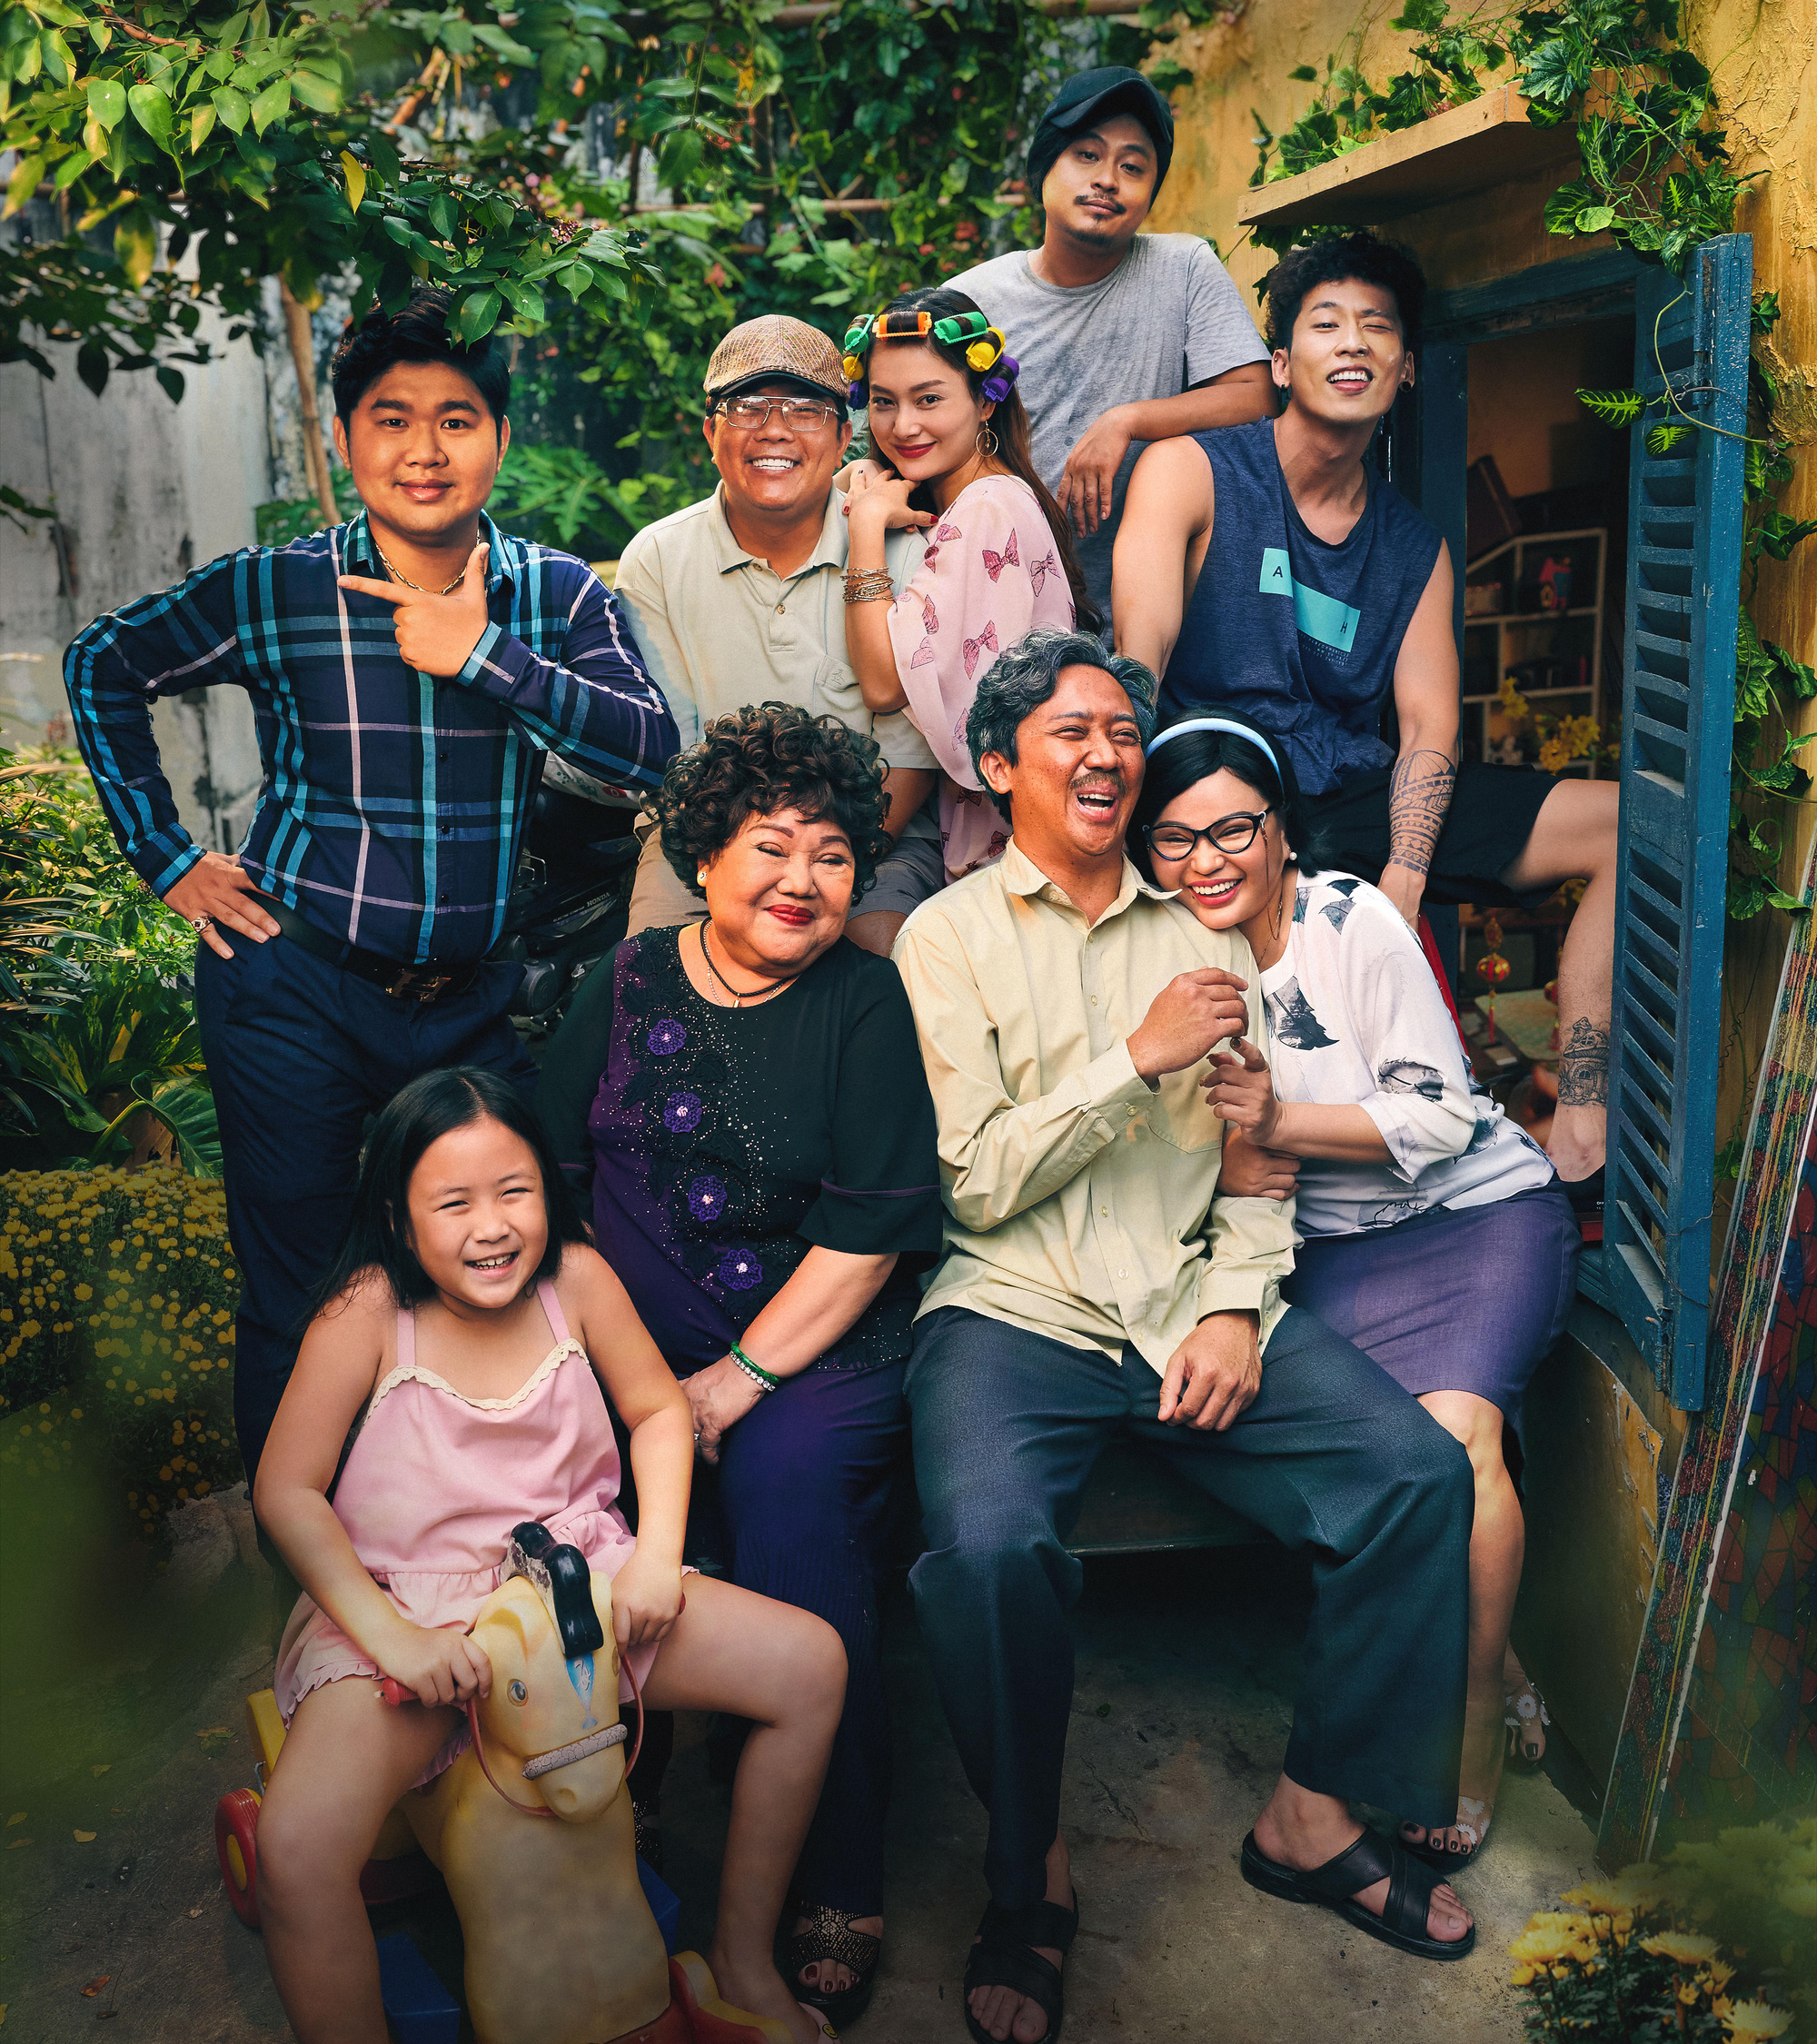 Hãy cùng khám phá thế giới điện ảnh Việt Nam đặc sắc với những câu chuyện đầy tình cảm và tính nhân văn. Những bộ phim này đánh dấu sự trưởng thành của ngành điện ảnh Việt Nam và xứng đáng với sự theo đuổi của bất kỳ ai mong muốn tìm hiểu về văn hóa Việt.